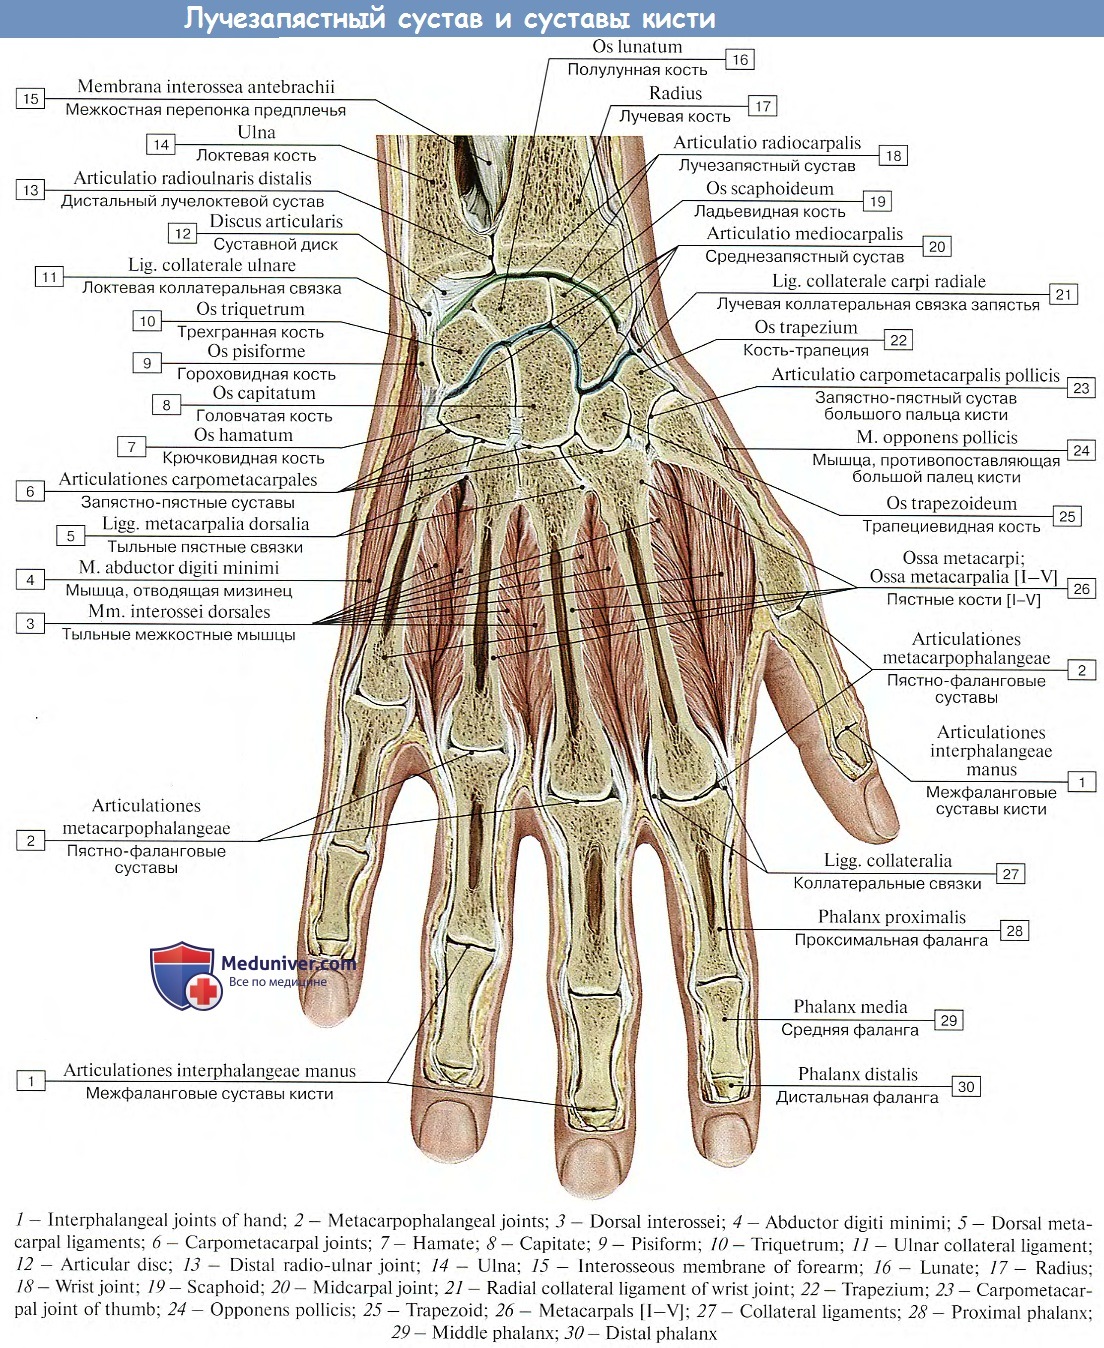 Как рисовать кисть руки? Анатомия для художника — fitdiets.ru